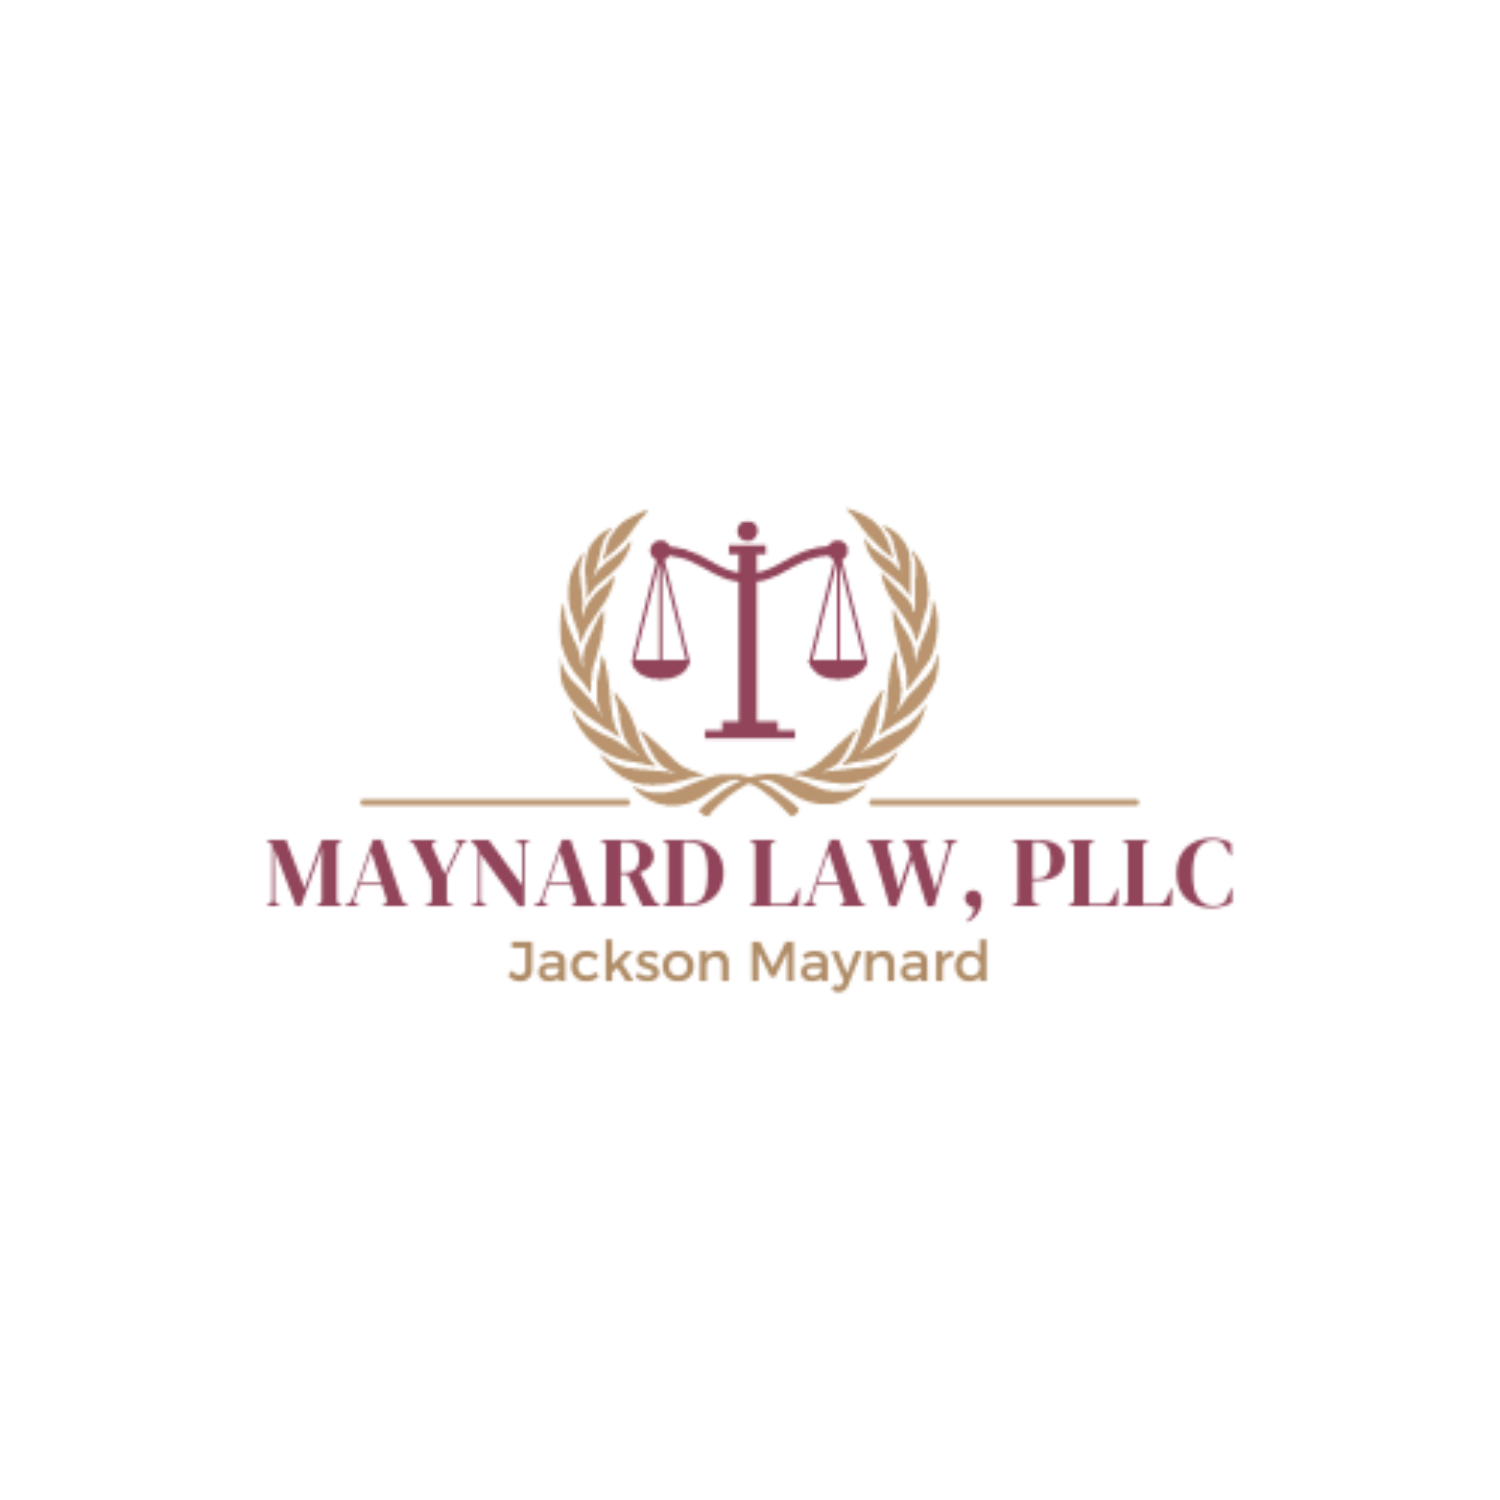 Maynard Law PLLC